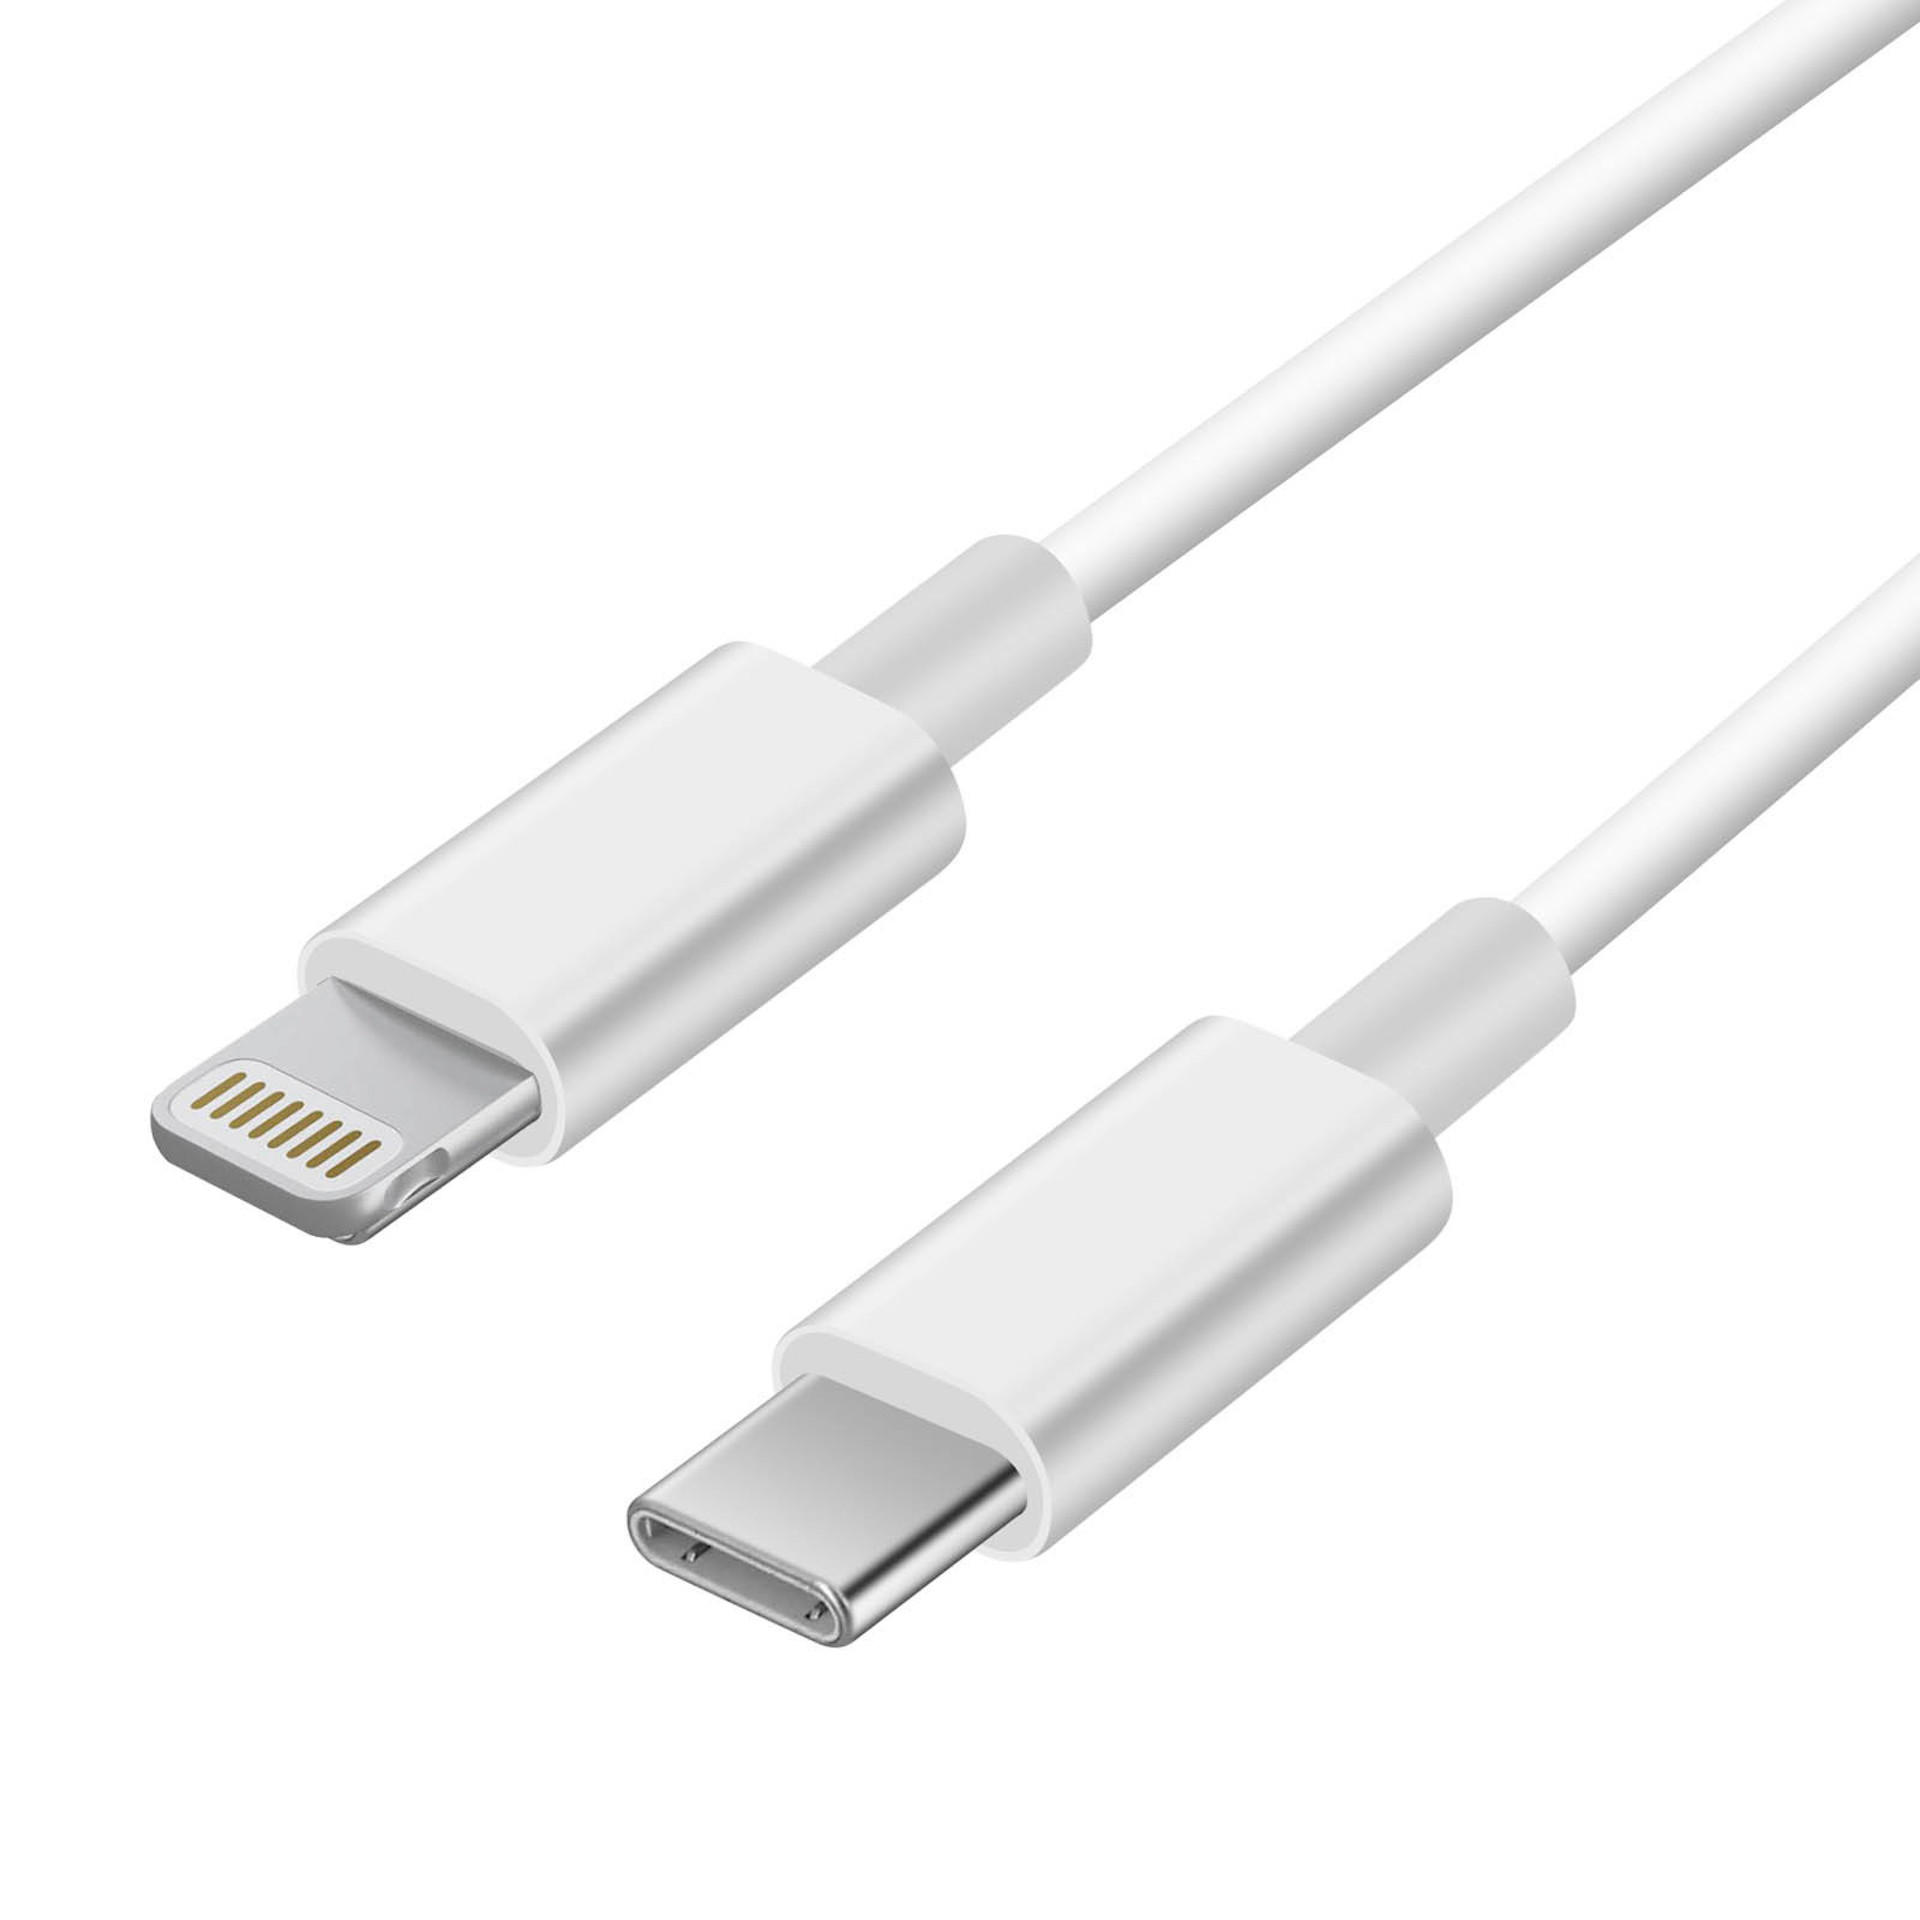 Comprar Cable de Datos y Carga APOKIN USB 2.0 a micro USB Carga Rápida 30cm